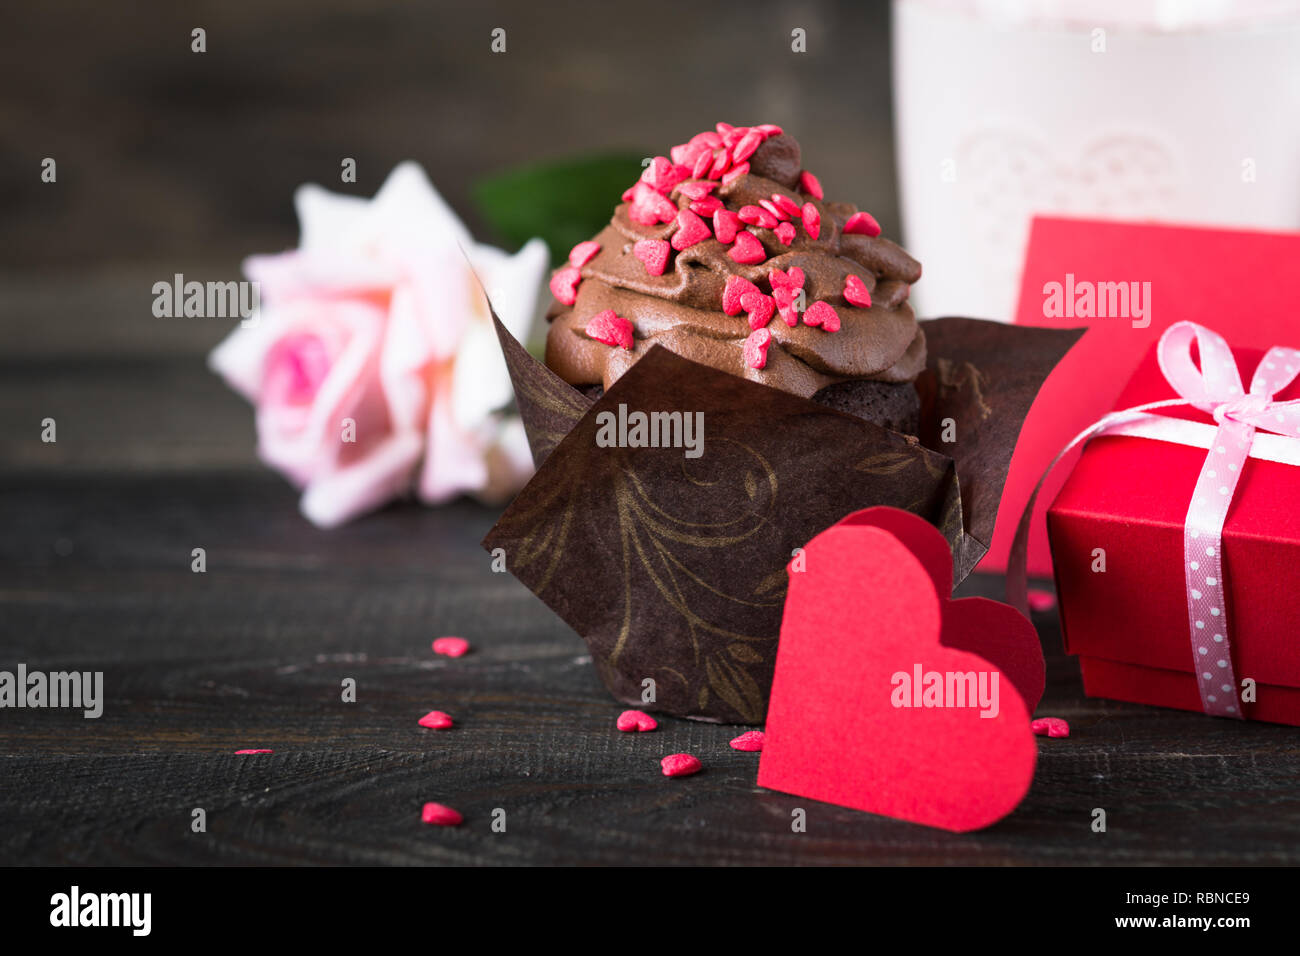 Petit gâteau au chocolat avec crème fouettée, parsemé de coeurs rouges tasse de thé rose cadeau. Valentine's Day background Banque D'Images